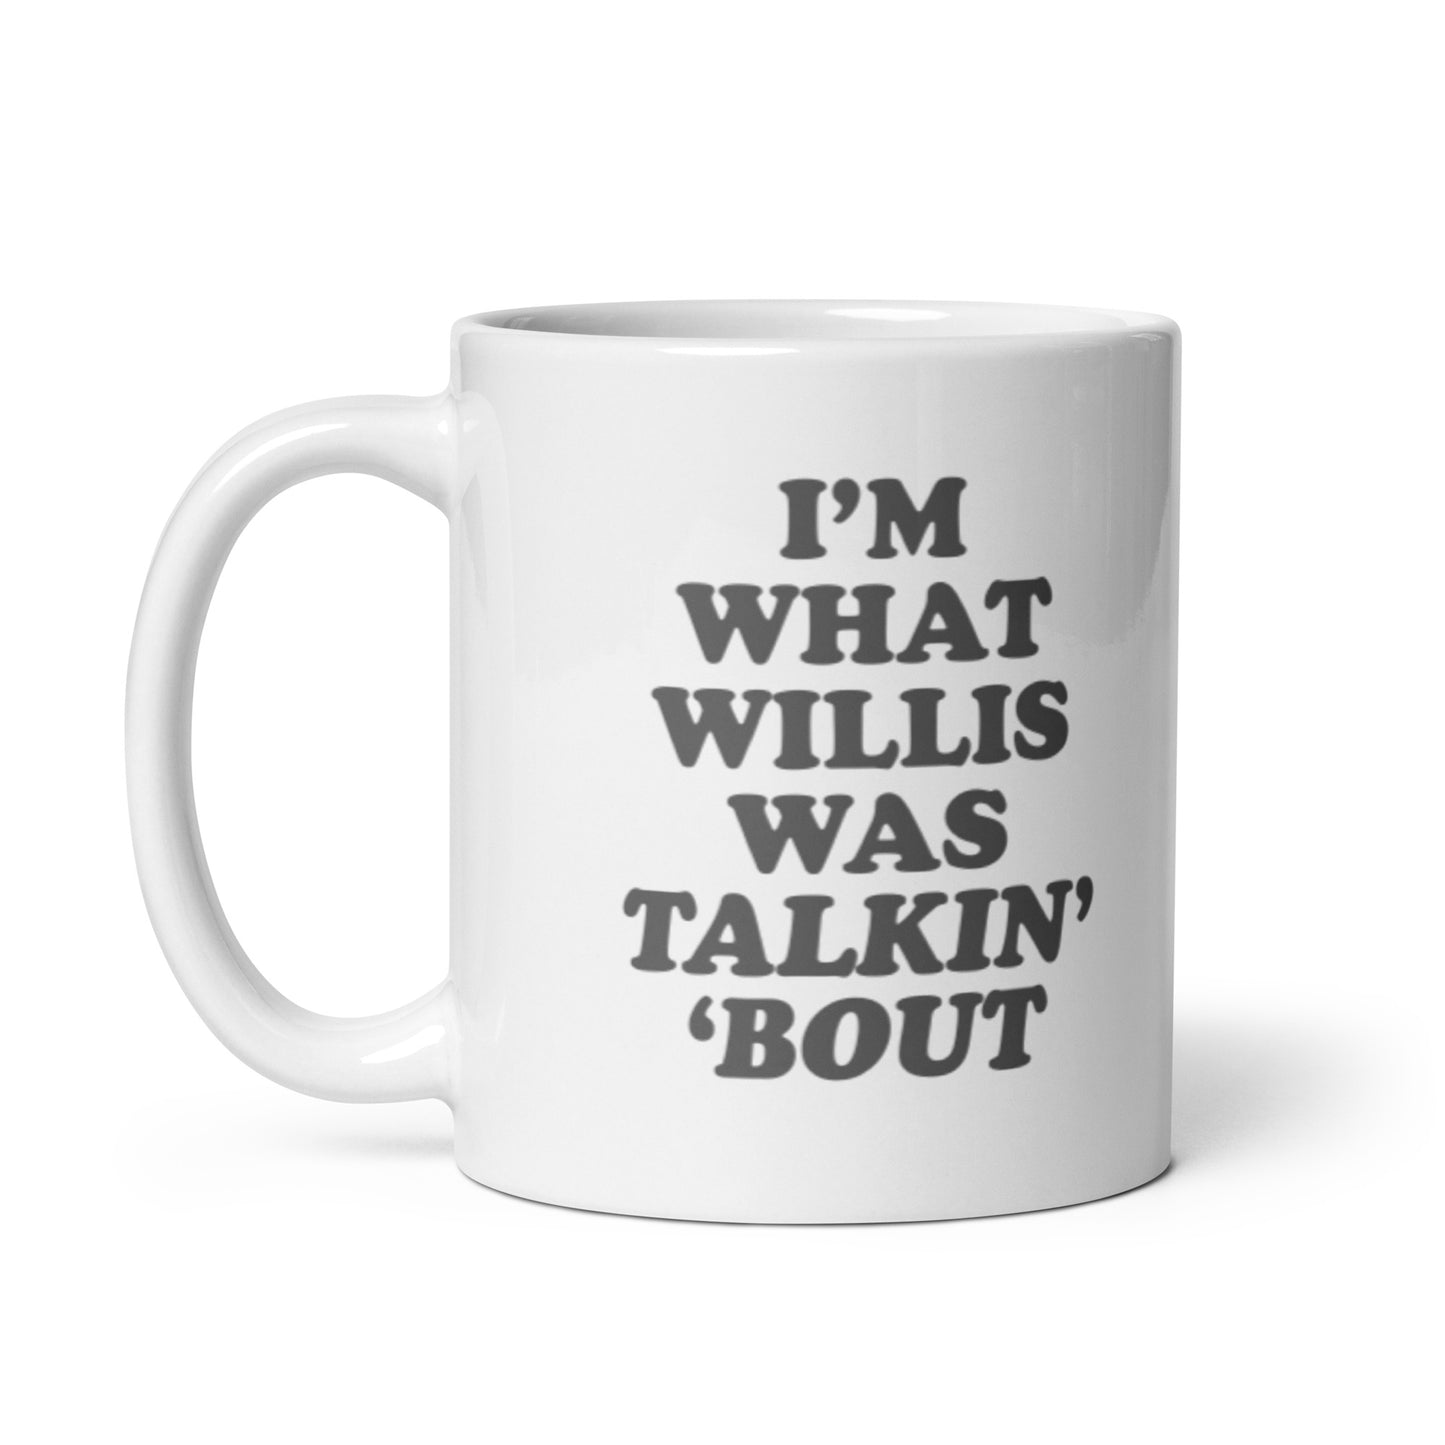 "I'm What Willis Was Talkin Bout" White Mug